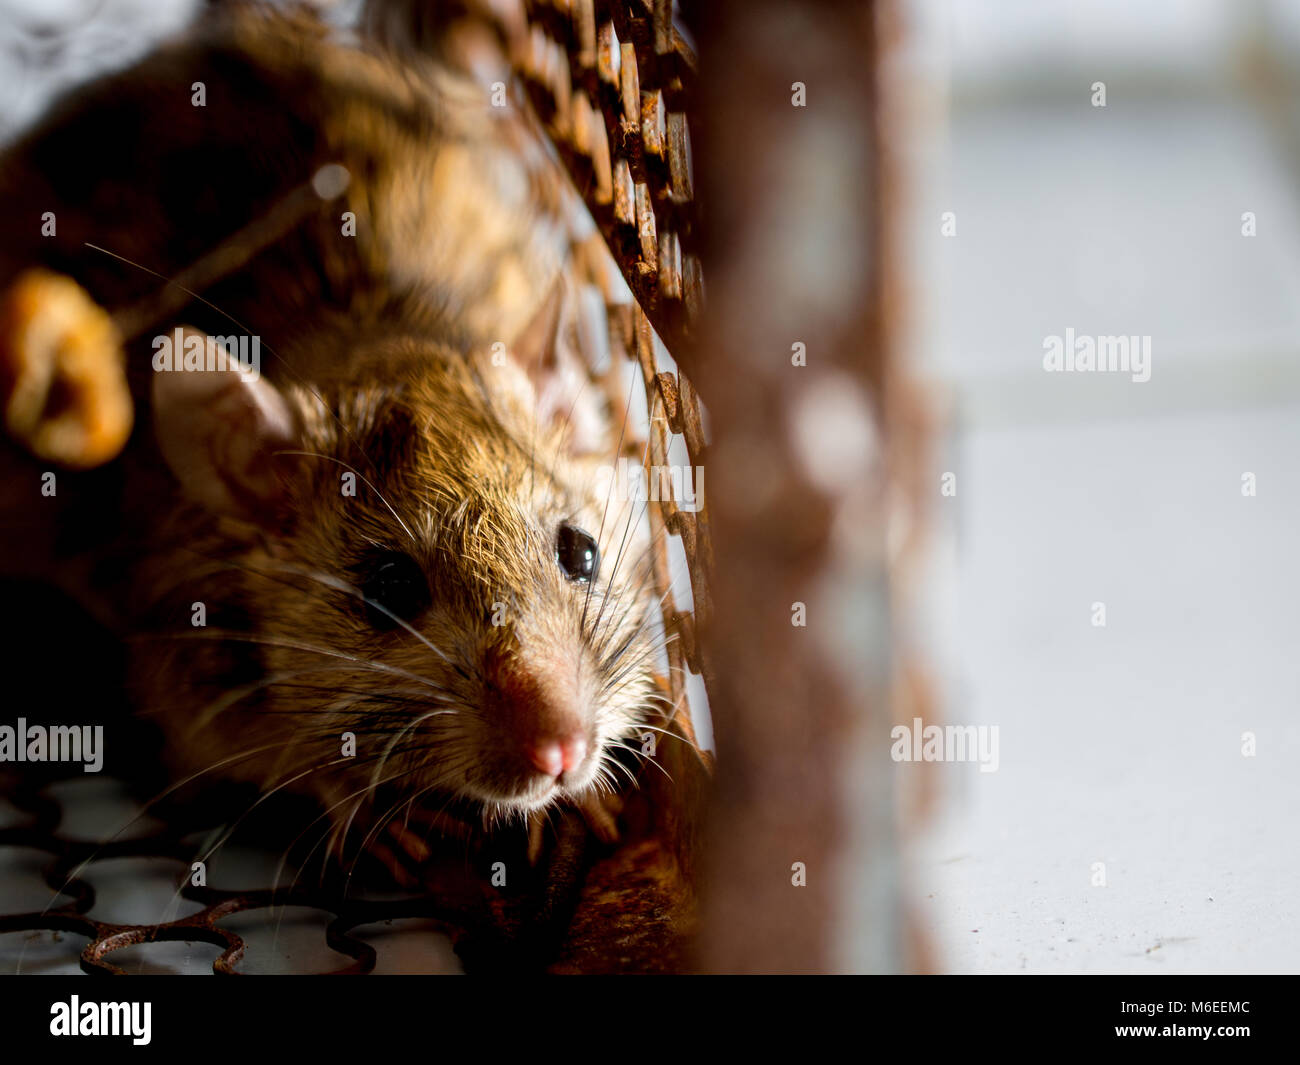 Rat dans une cage d'attraper un rat. le rat a la contagion des maladies aux  humains comme la leptospirose, la peste. Maisons et logements ne devraient  pas avoir des souris. con Photo